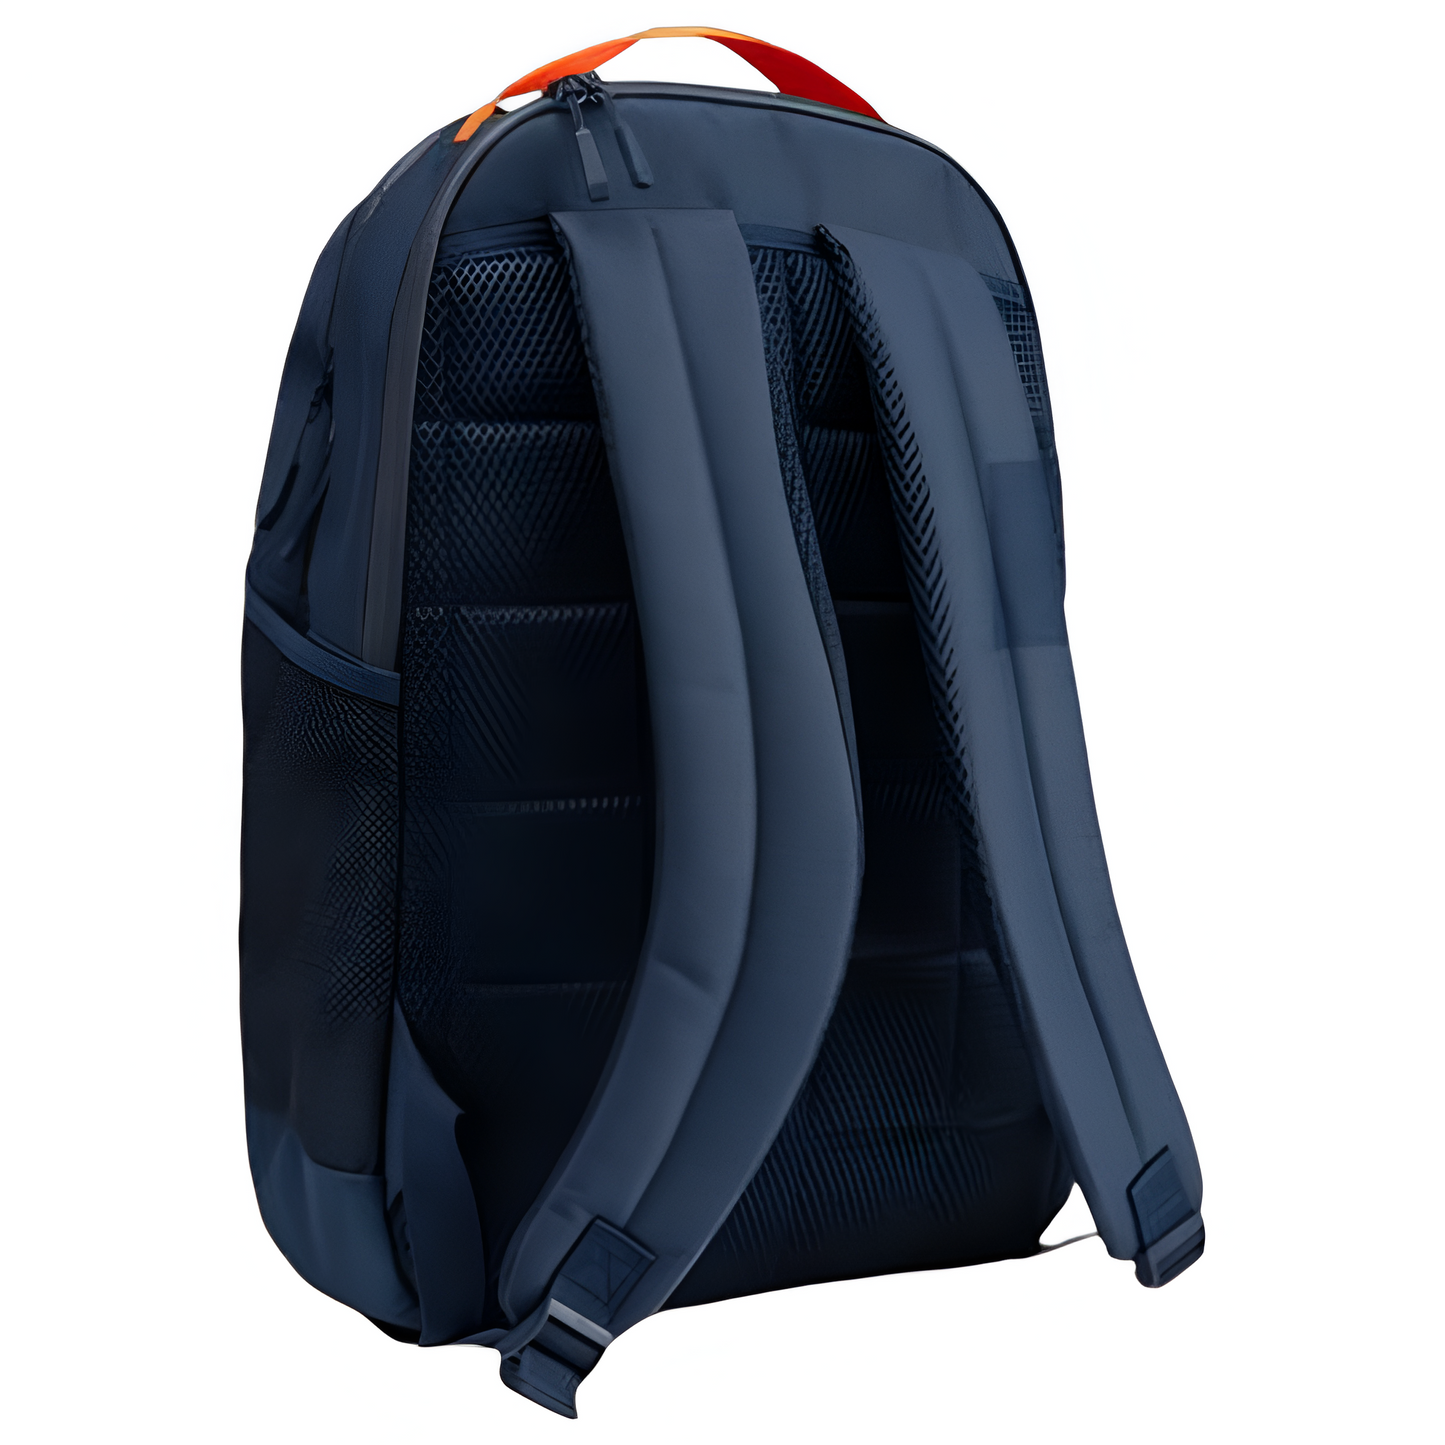 KTM Apex Backpack, Redbull bag, F1 backpack, Formula one bag, sports bag, brand bag, KTM back bag, new in stock, limited edition, Red bull bag, brand bag, racing bag